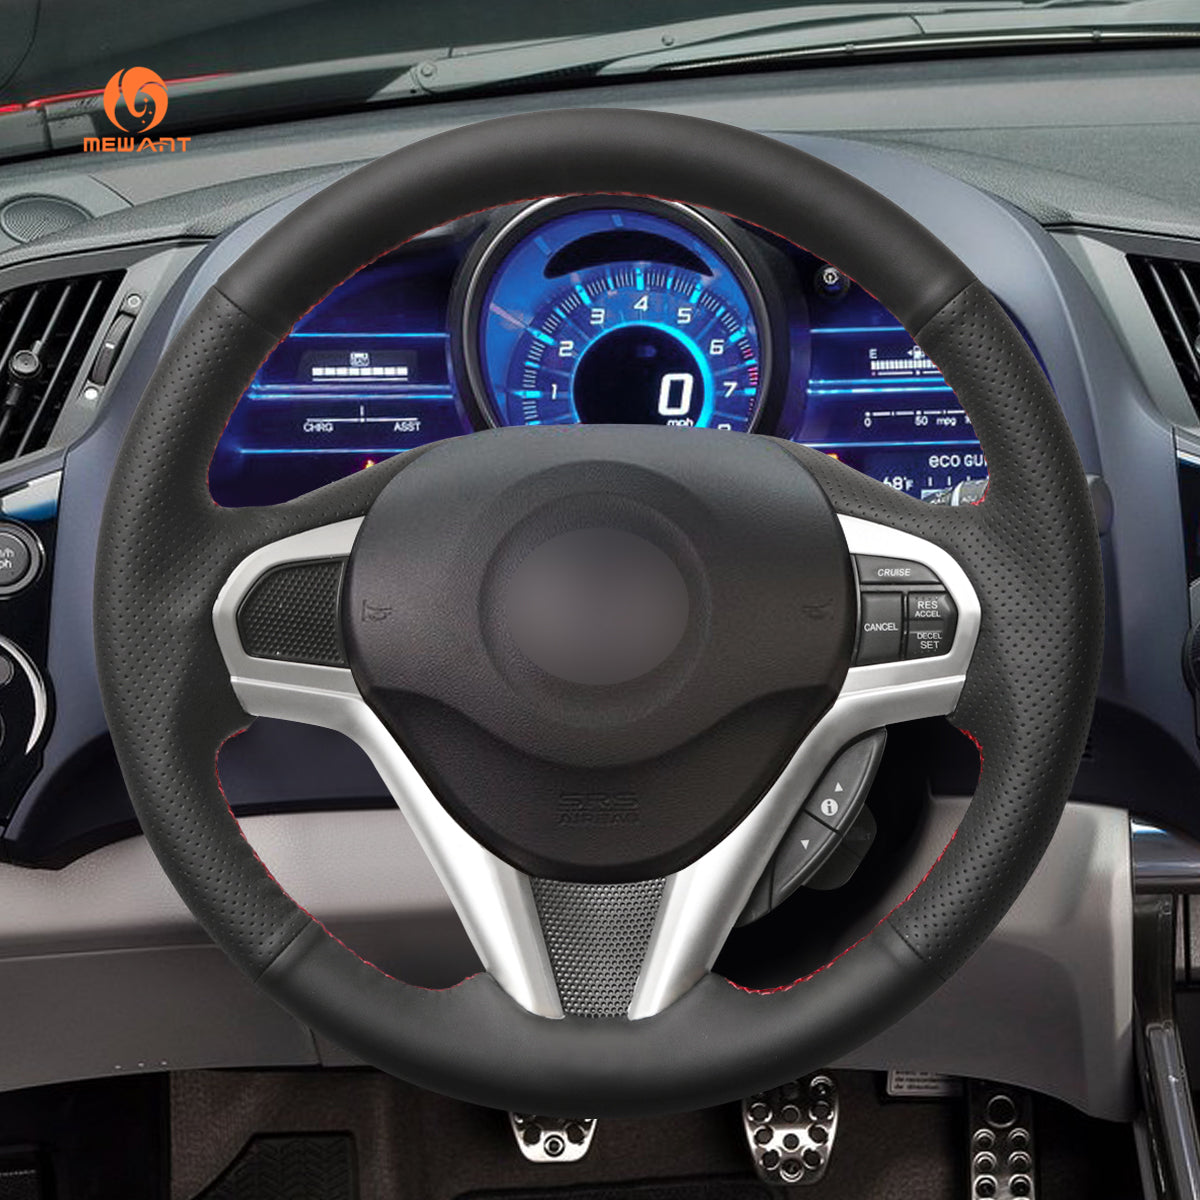 Car Steering Wheel Cover for Honda CR-Z CRZ 2011-2016